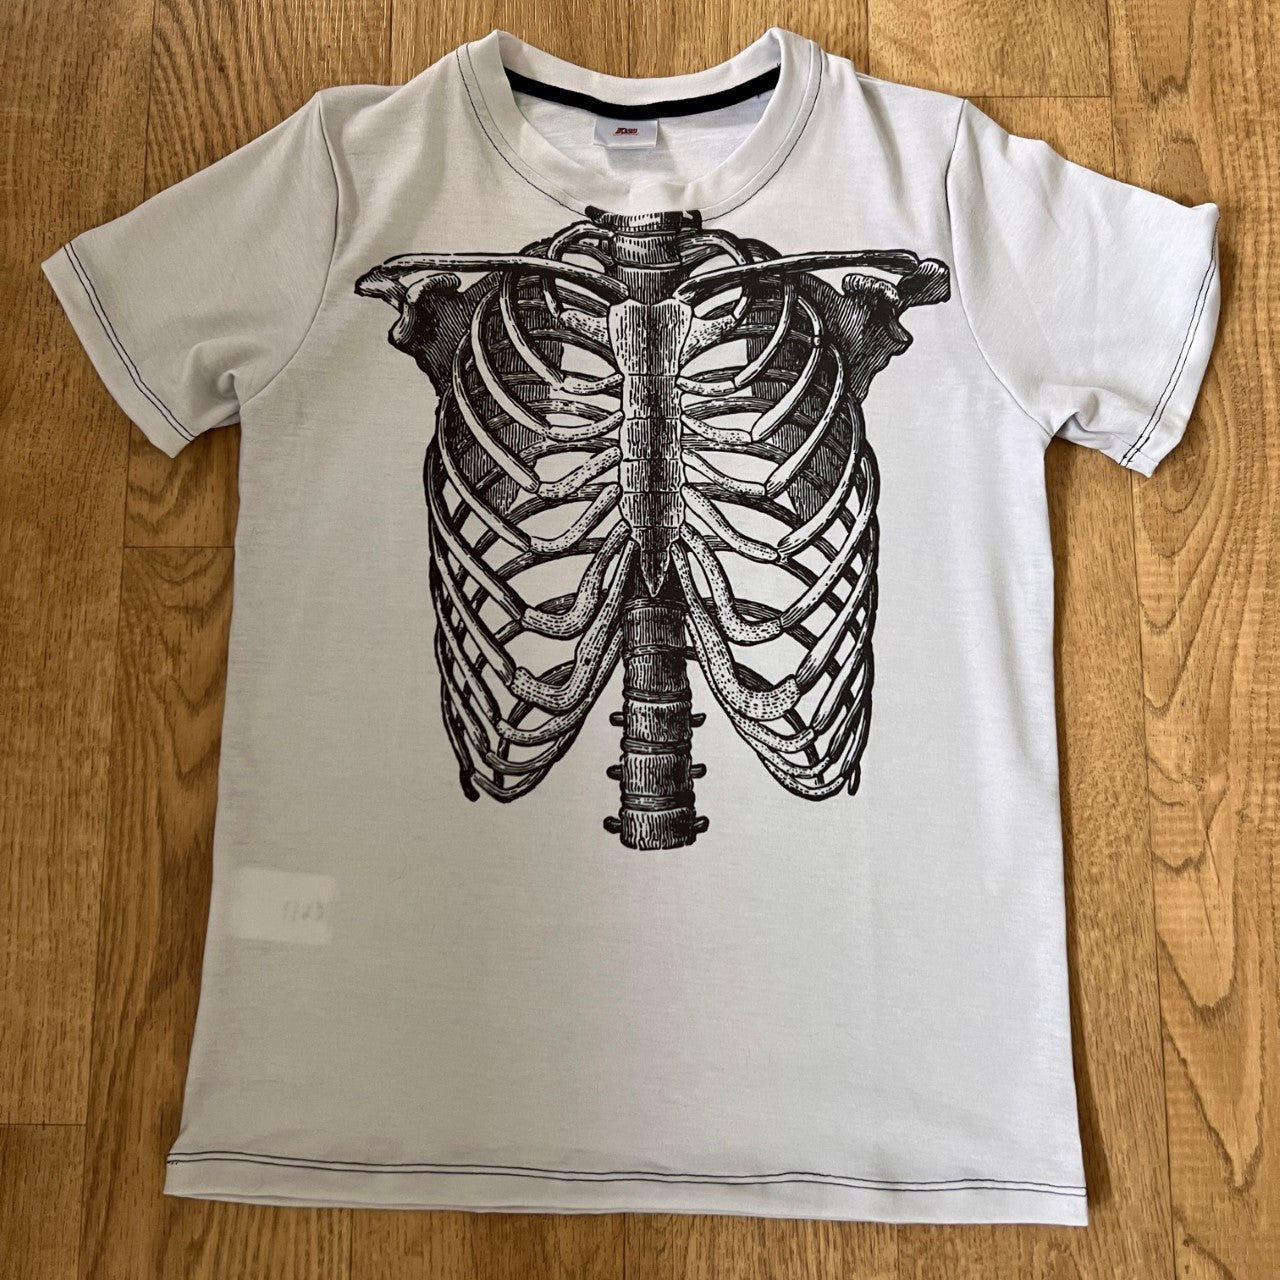 Ribcage KiSS KIDS T-Shirt - Skeleton - Bones Grunge